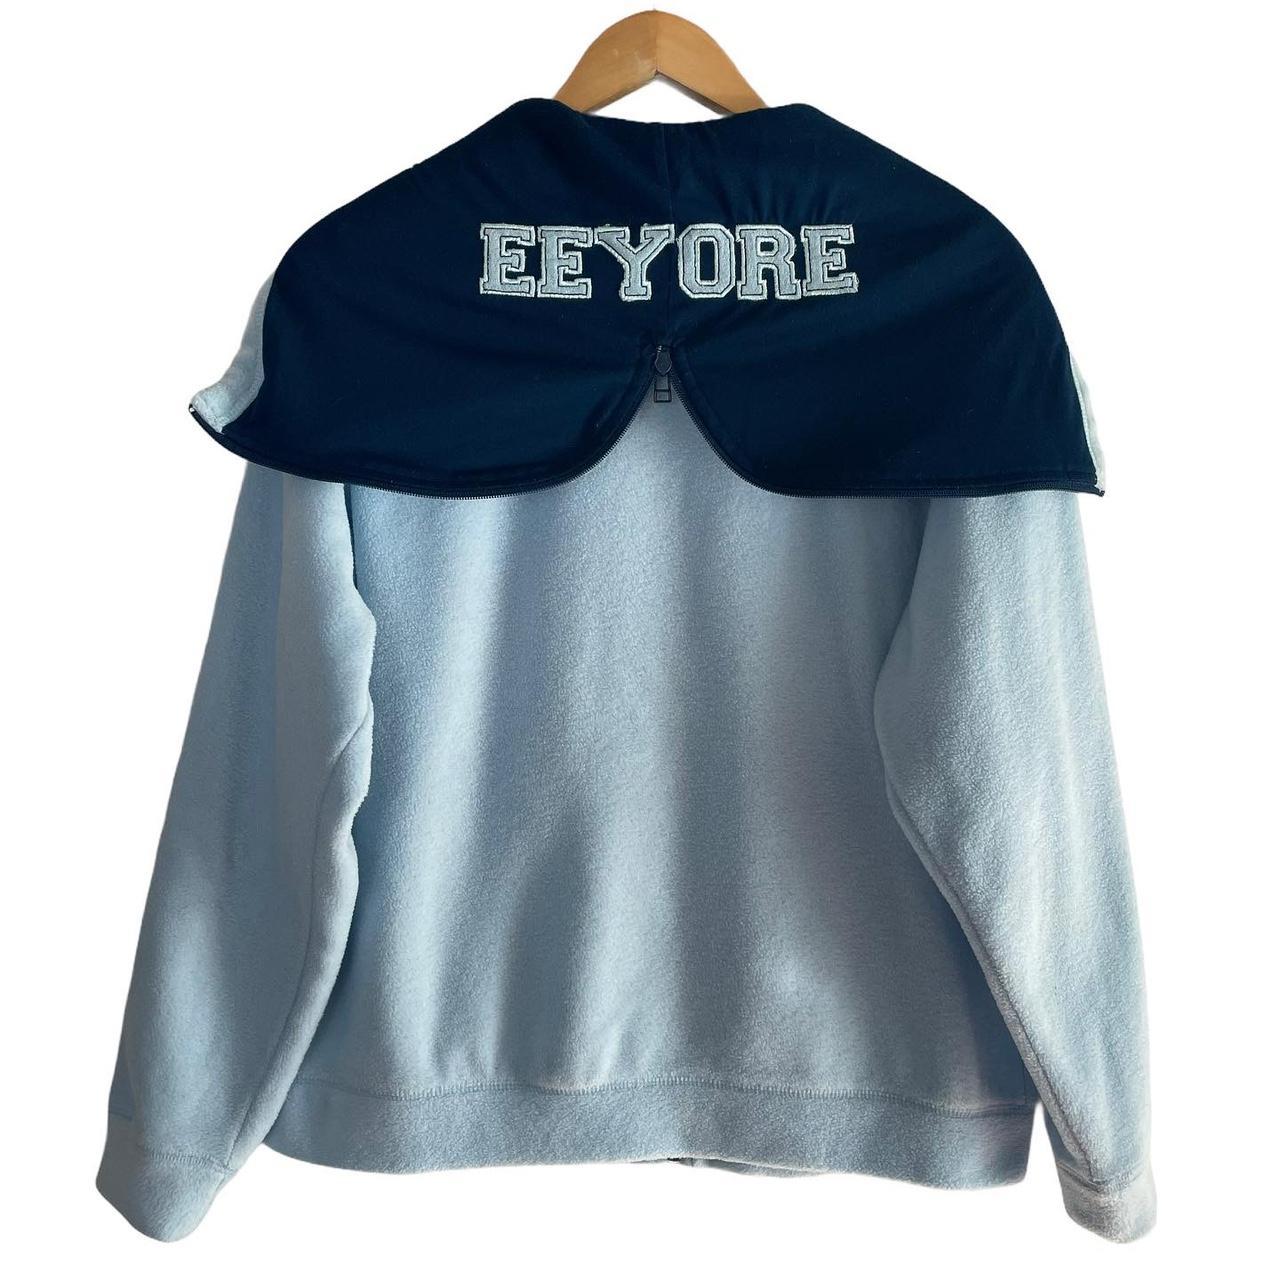 Product Image 3 - Disney Eeyore Embroidered Fleece Jacket